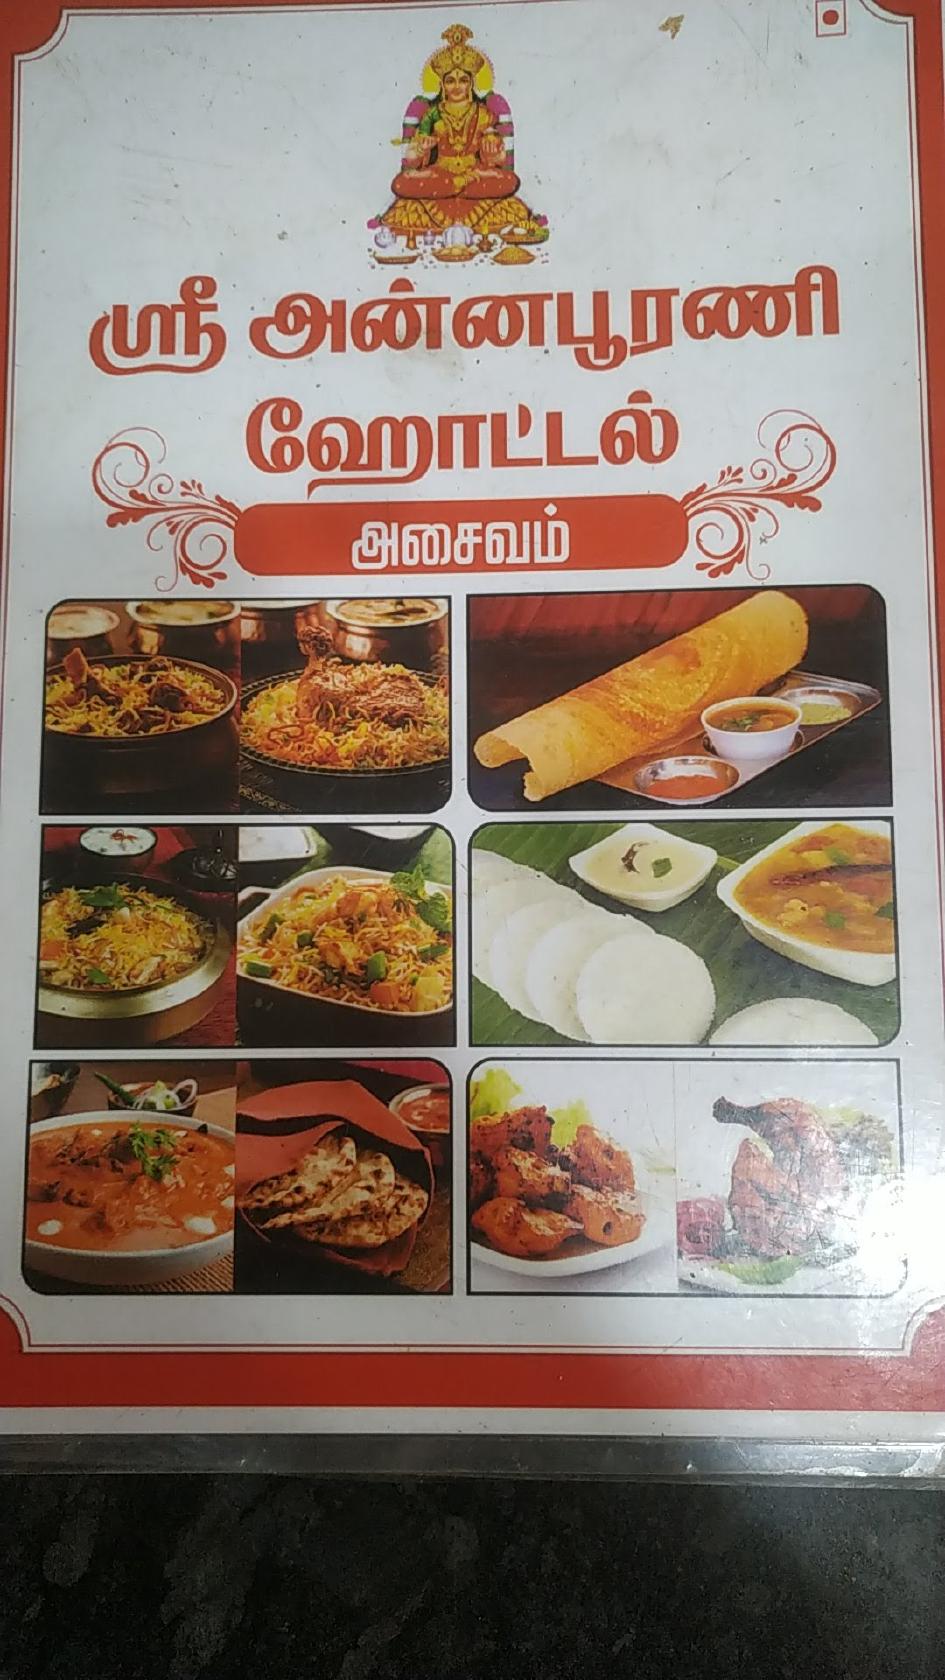 Sri Annapoorani Hotel Asaivam, Pollachi Restaurant reviews